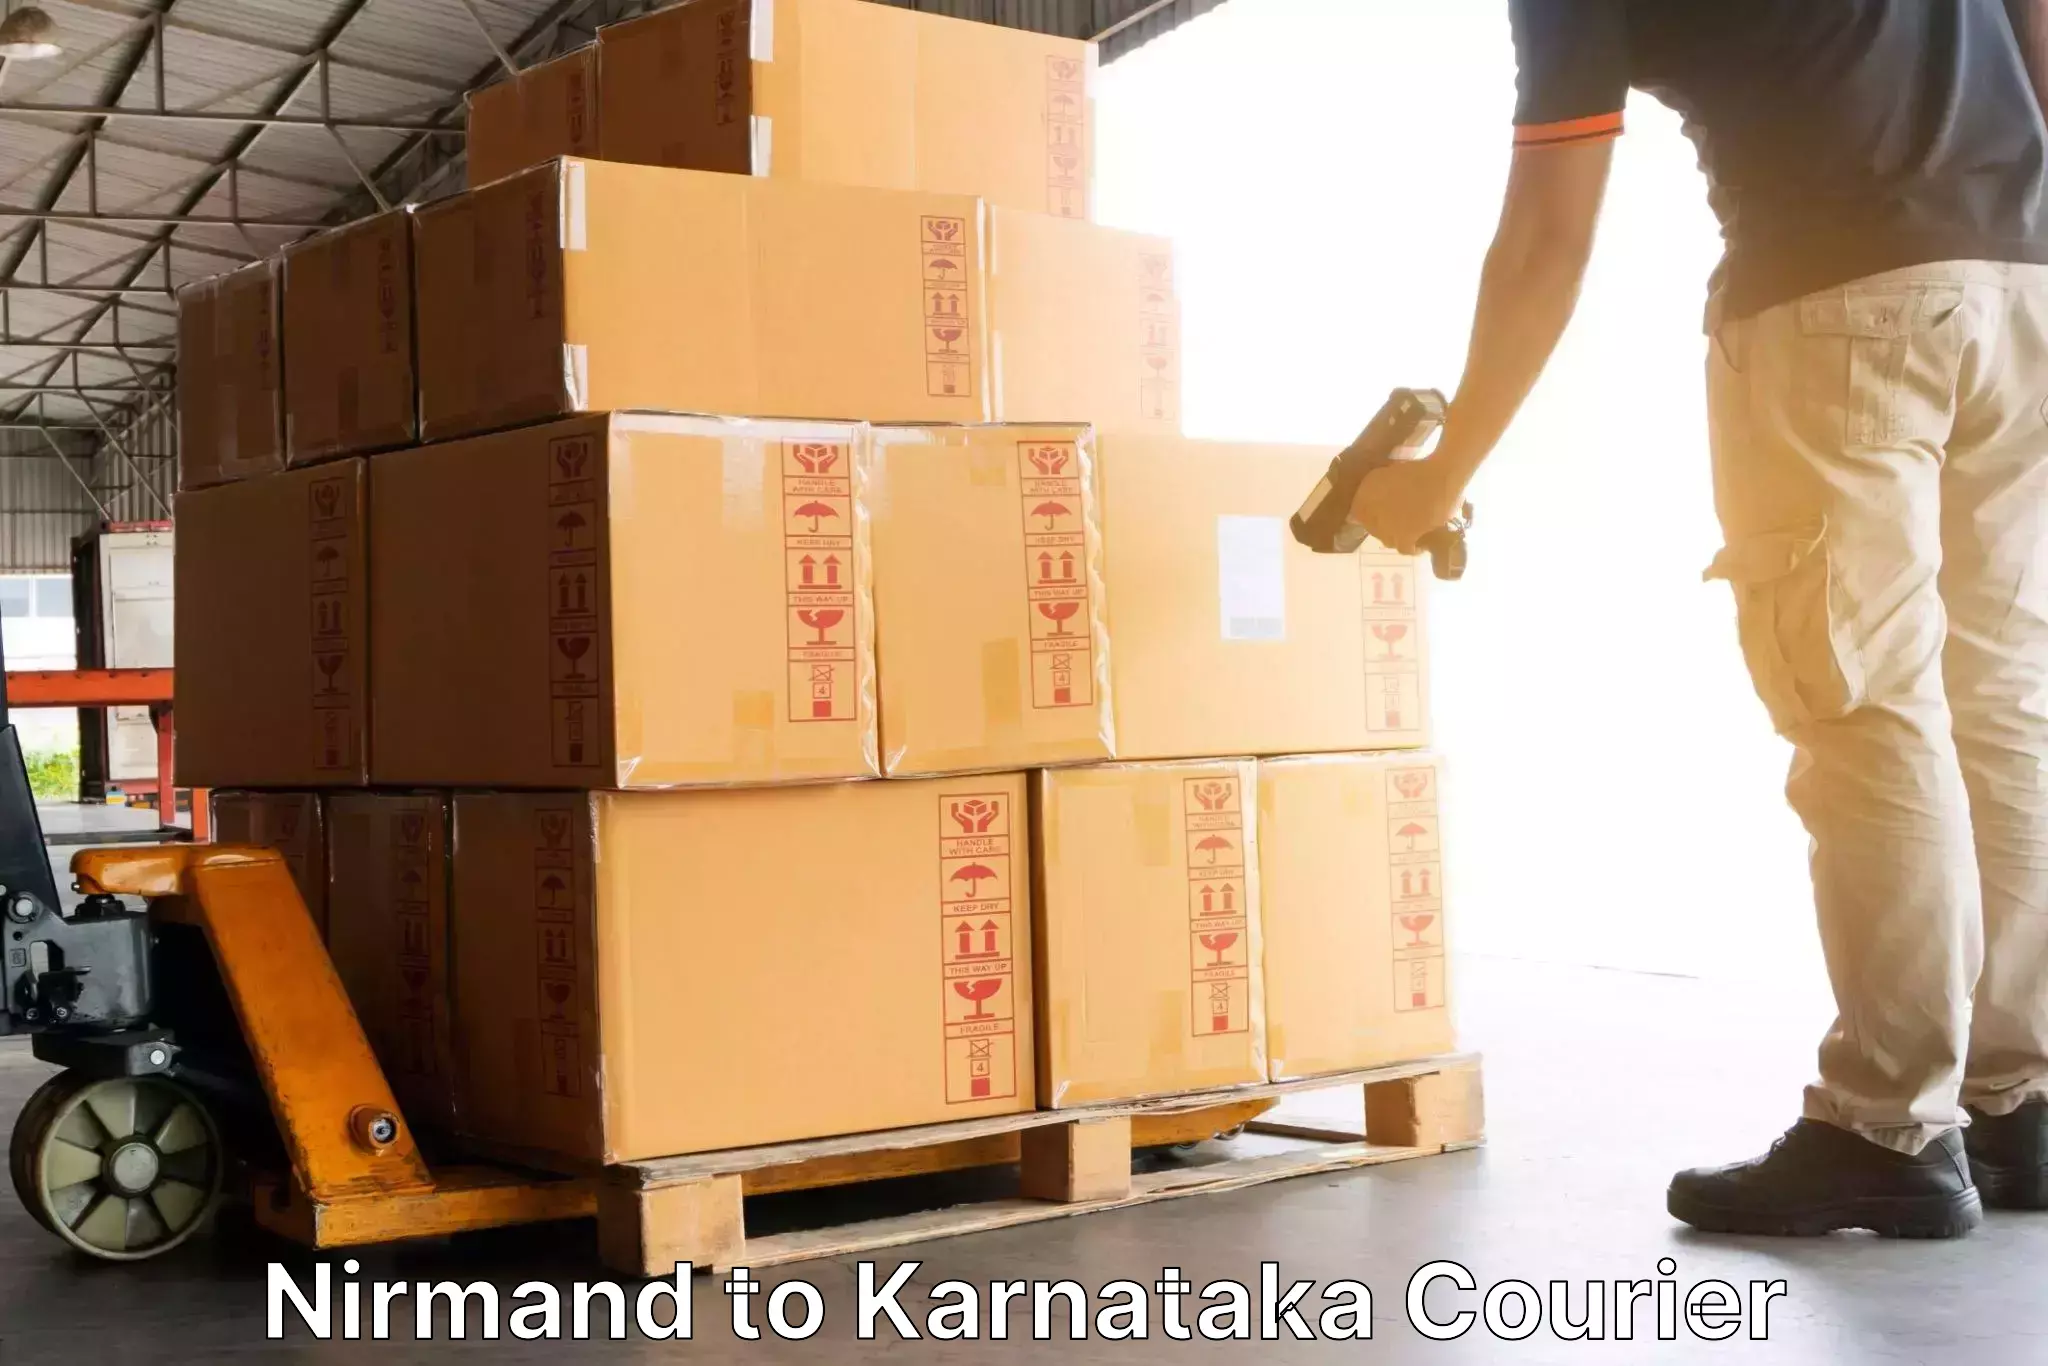 Global shipping networks Nirmand to Kushalnagar